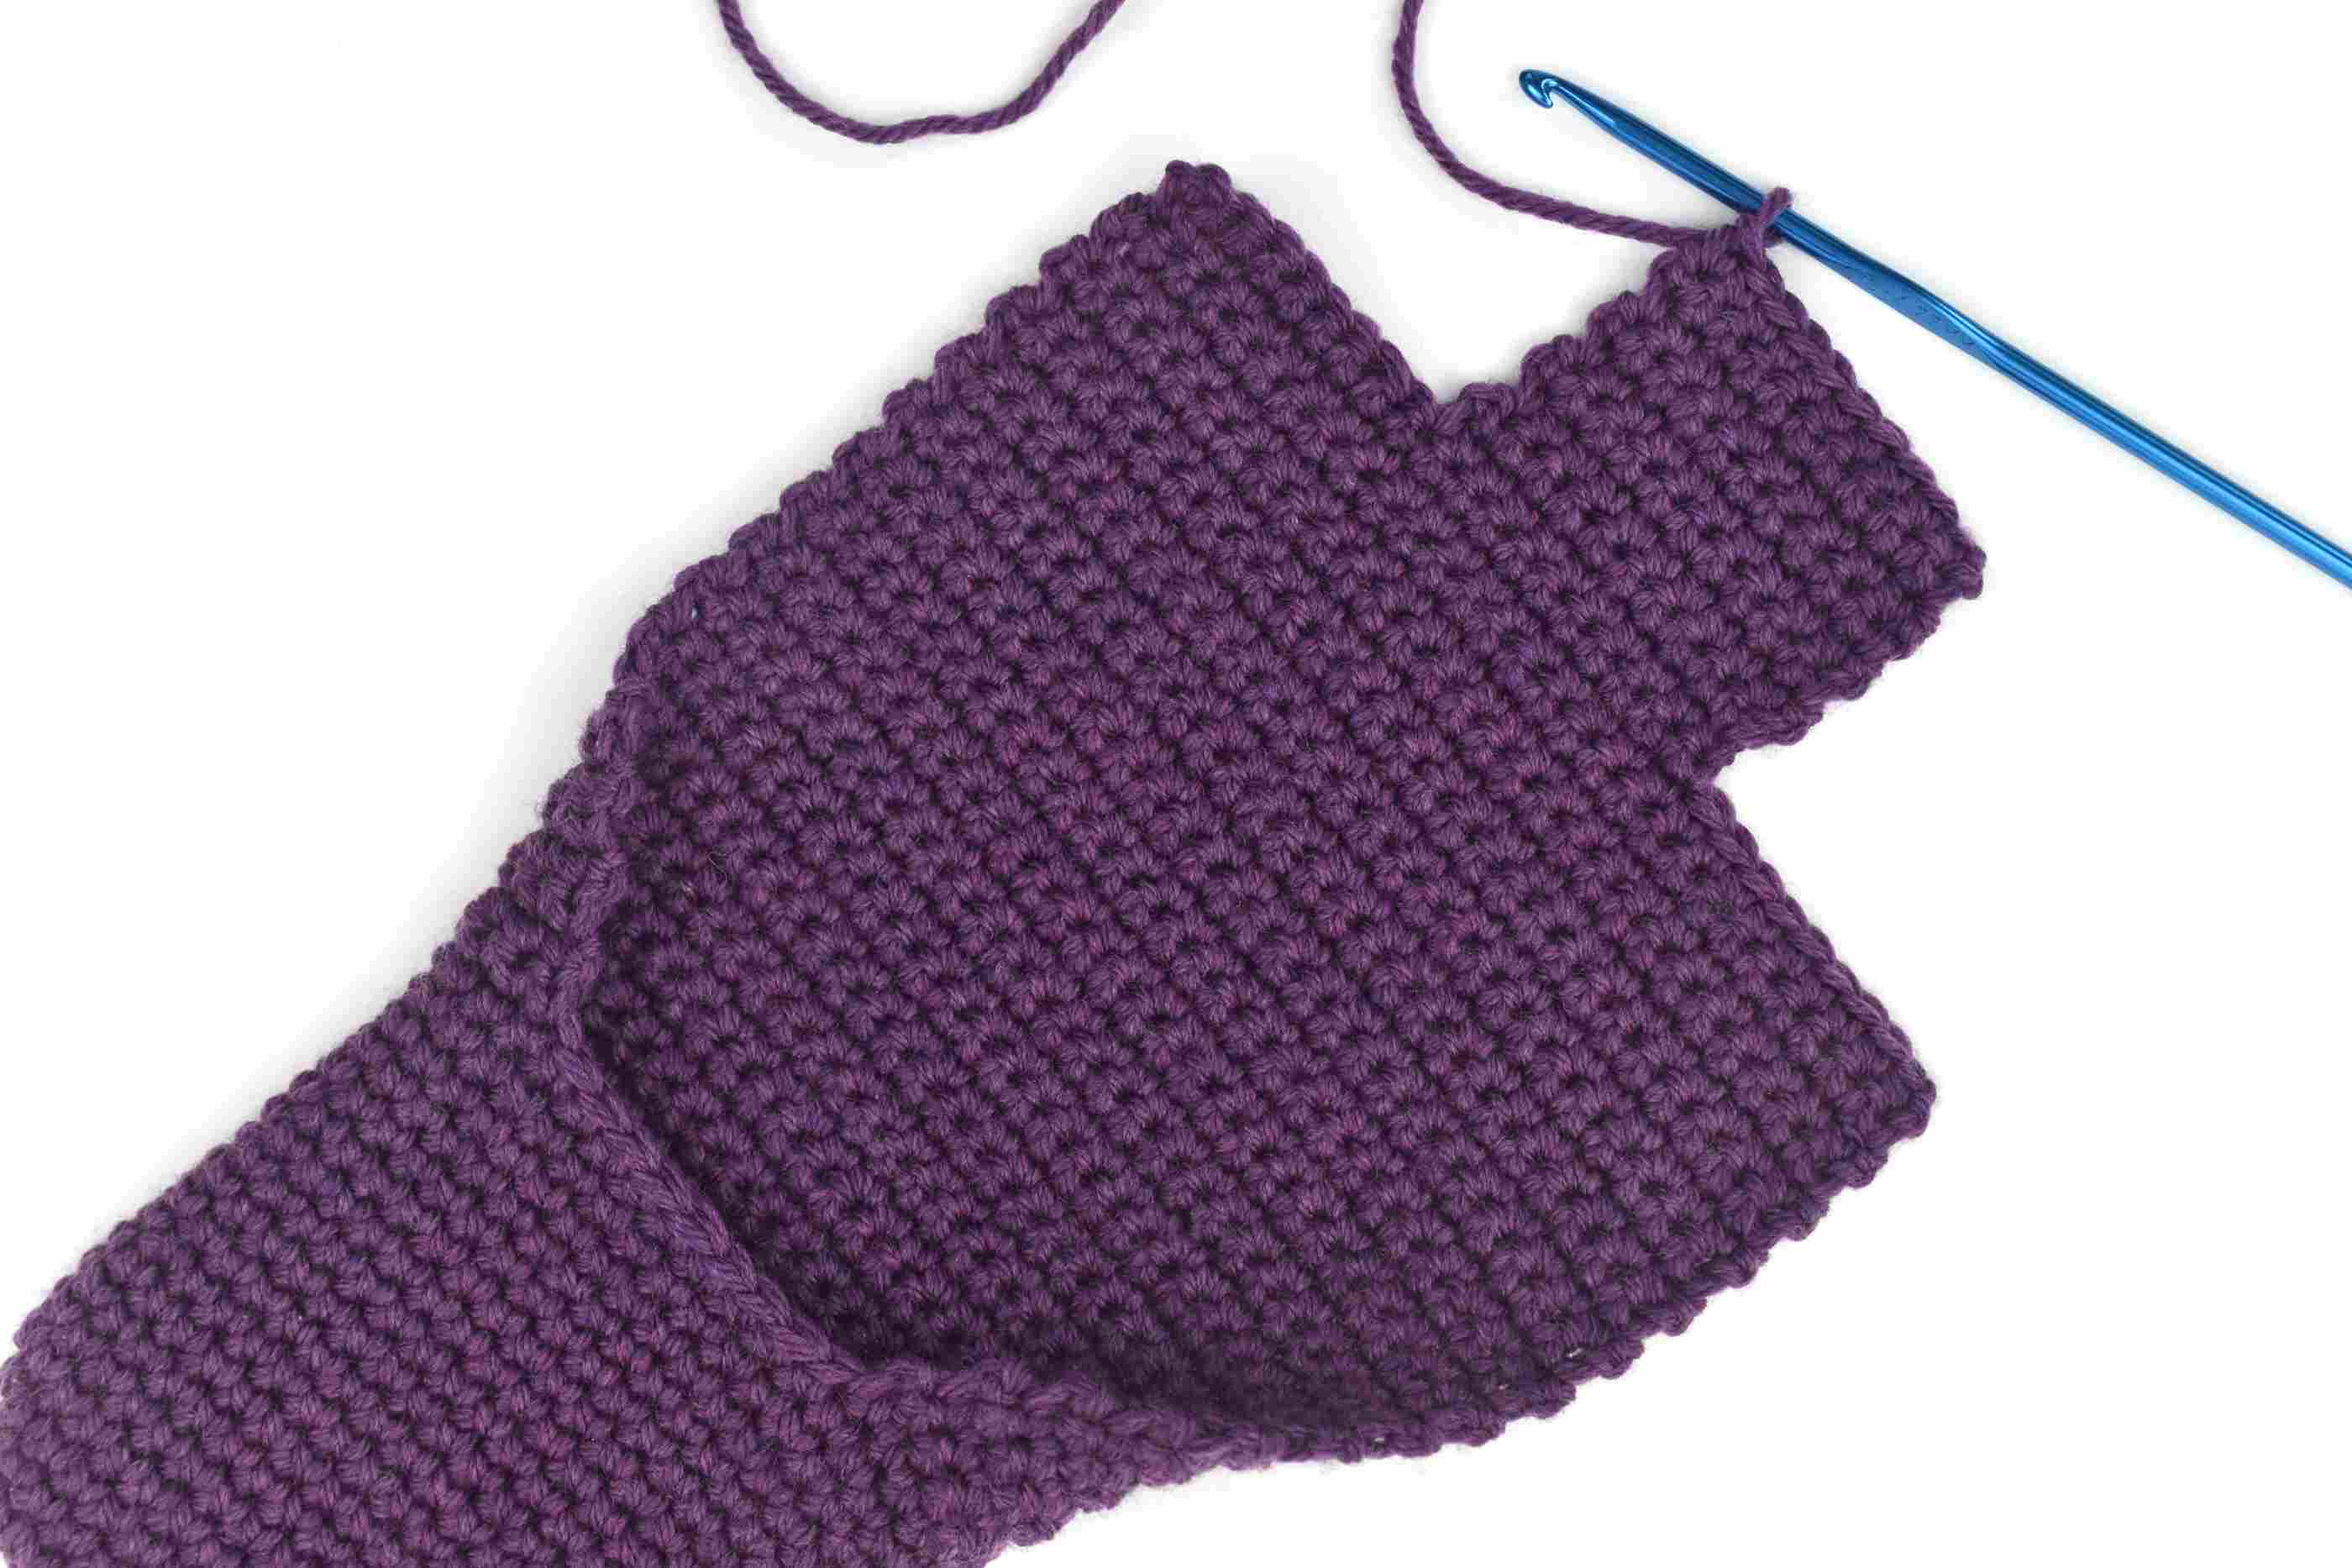 Crochet Slipper Patterns Simple Crochet Slippers Free Pattern